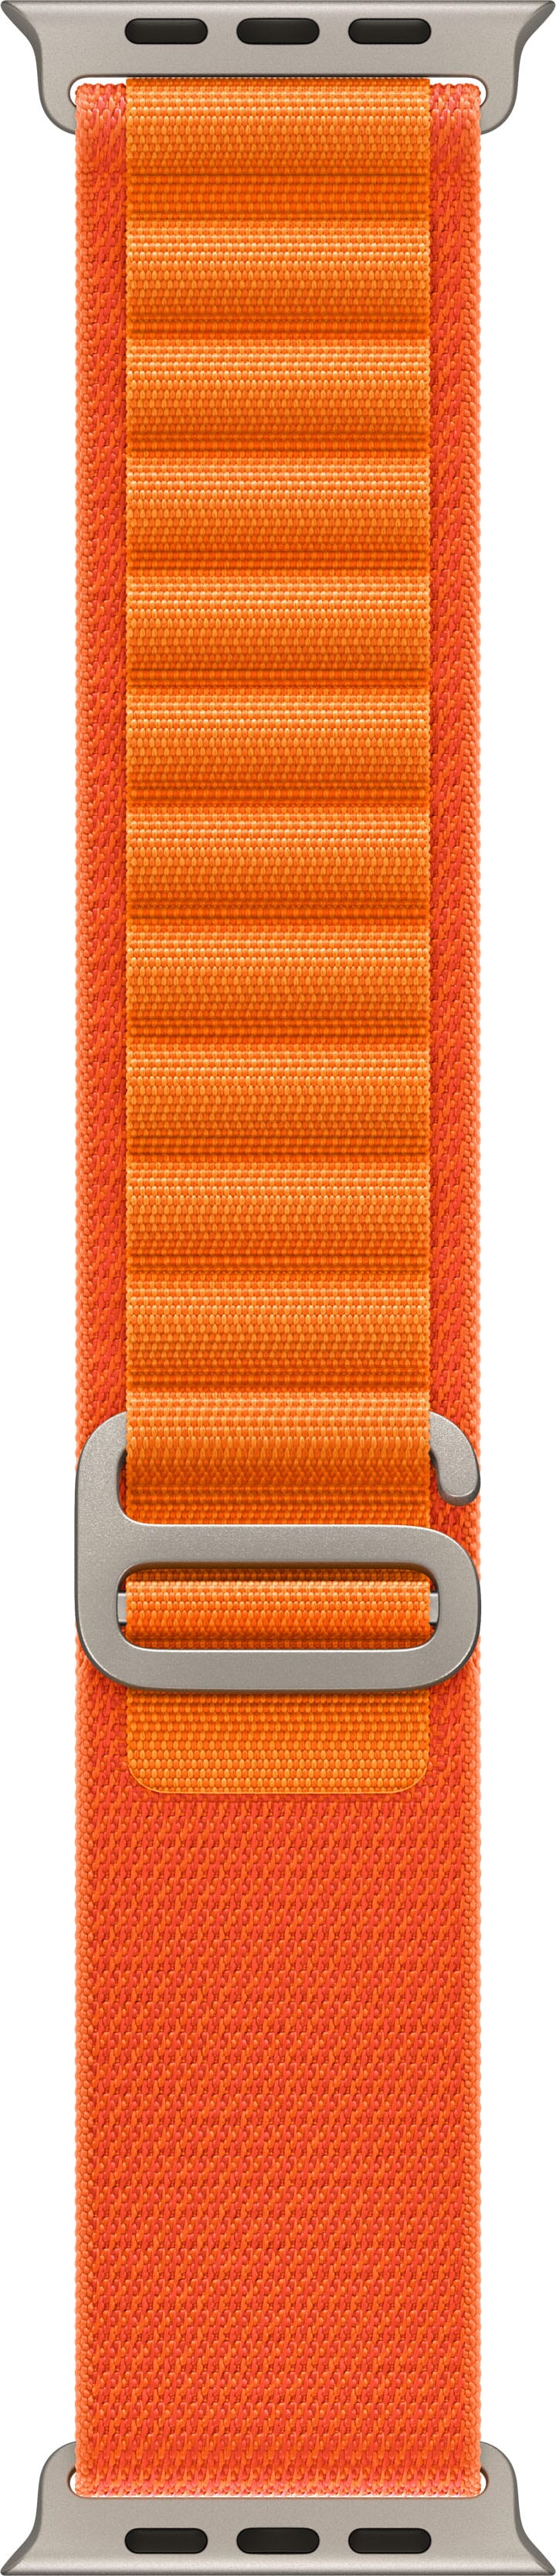 Apple - 49mm Orange Alpine Loop - Small - Orange_0